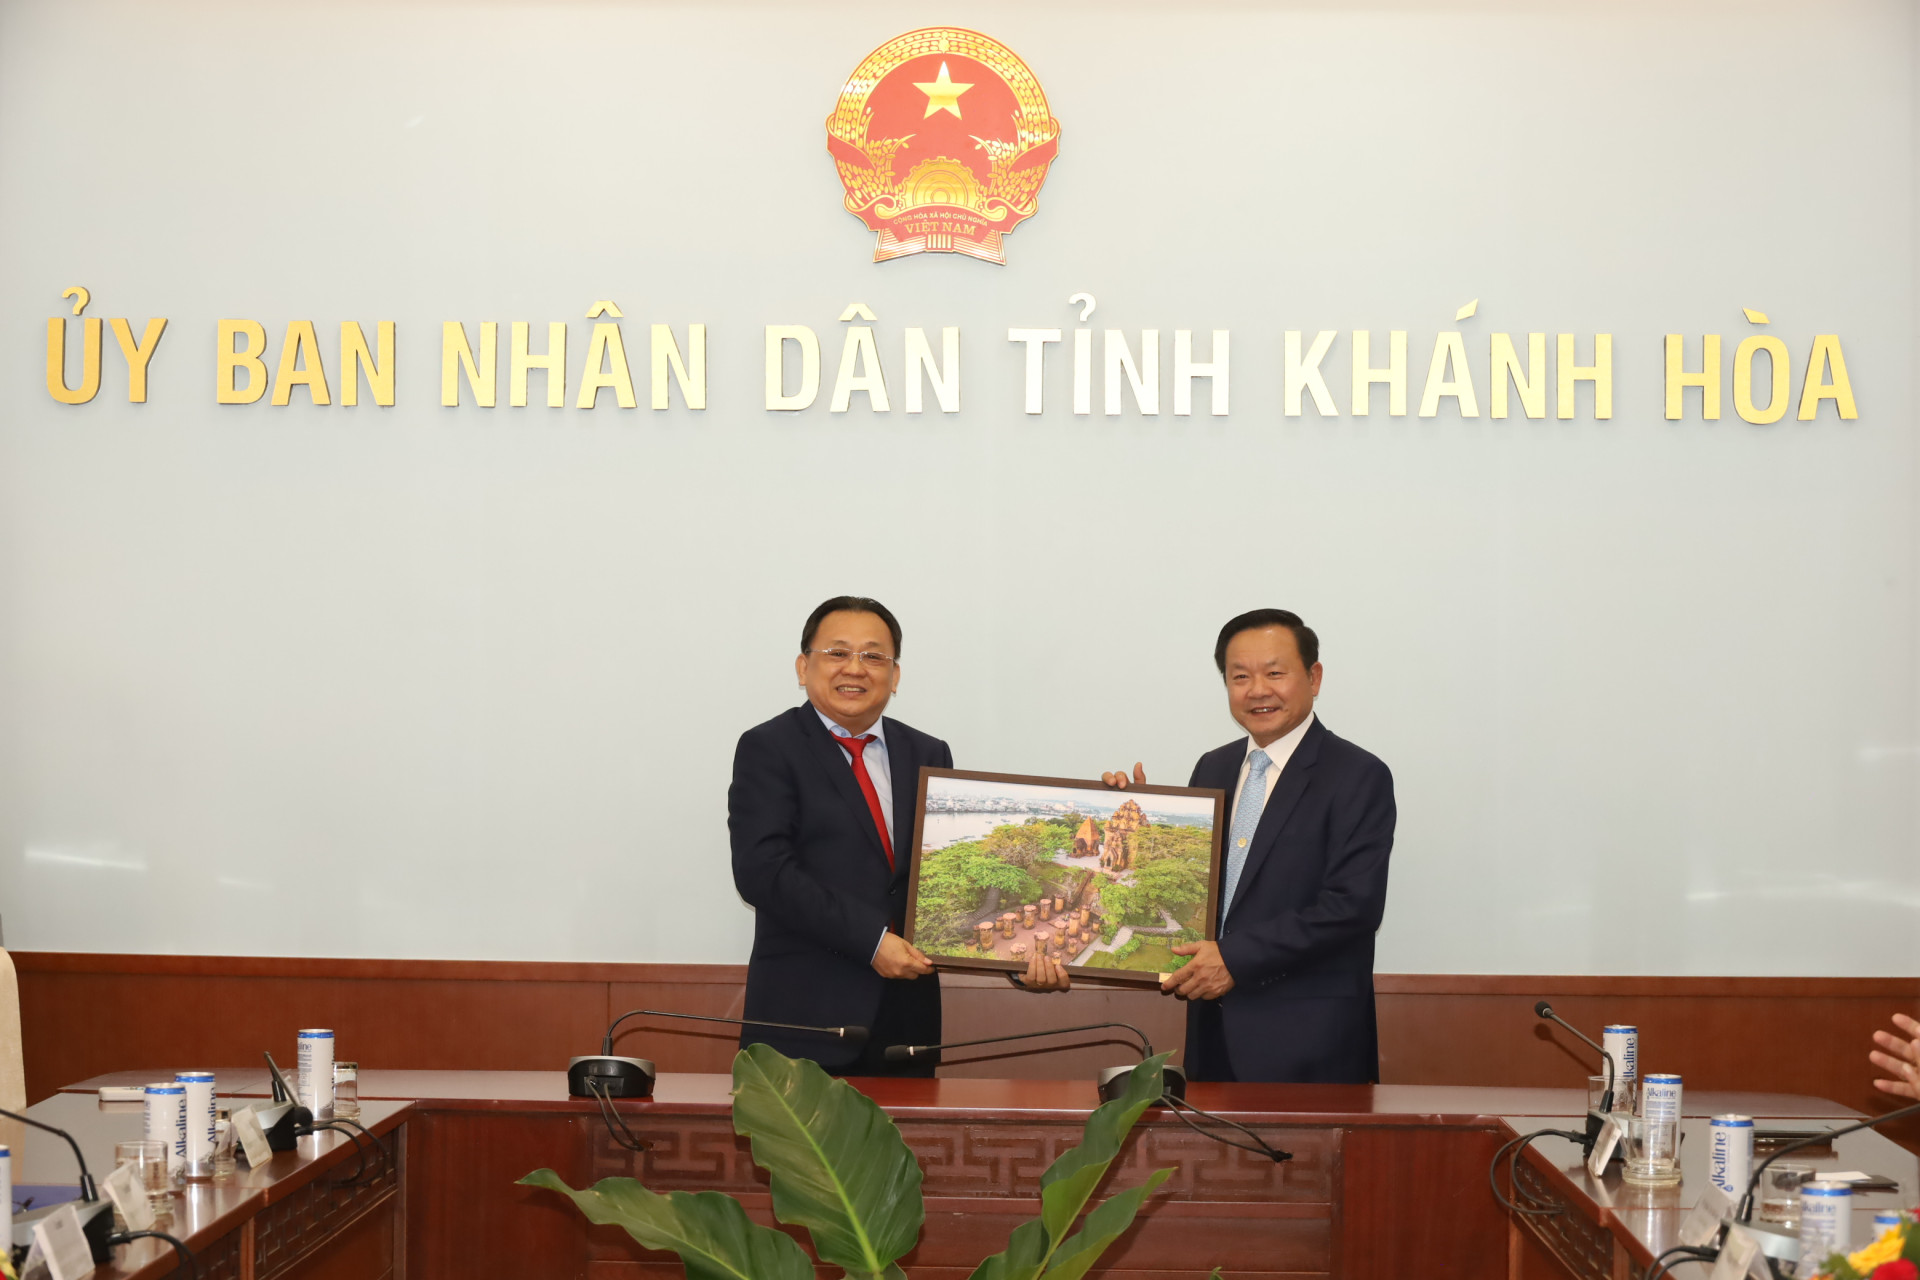 Đồng chí Lê Hữu Hoàng tặng ông Phoukhong Bannavong bức ảnh về di tích Tháp Bà Ponagar.